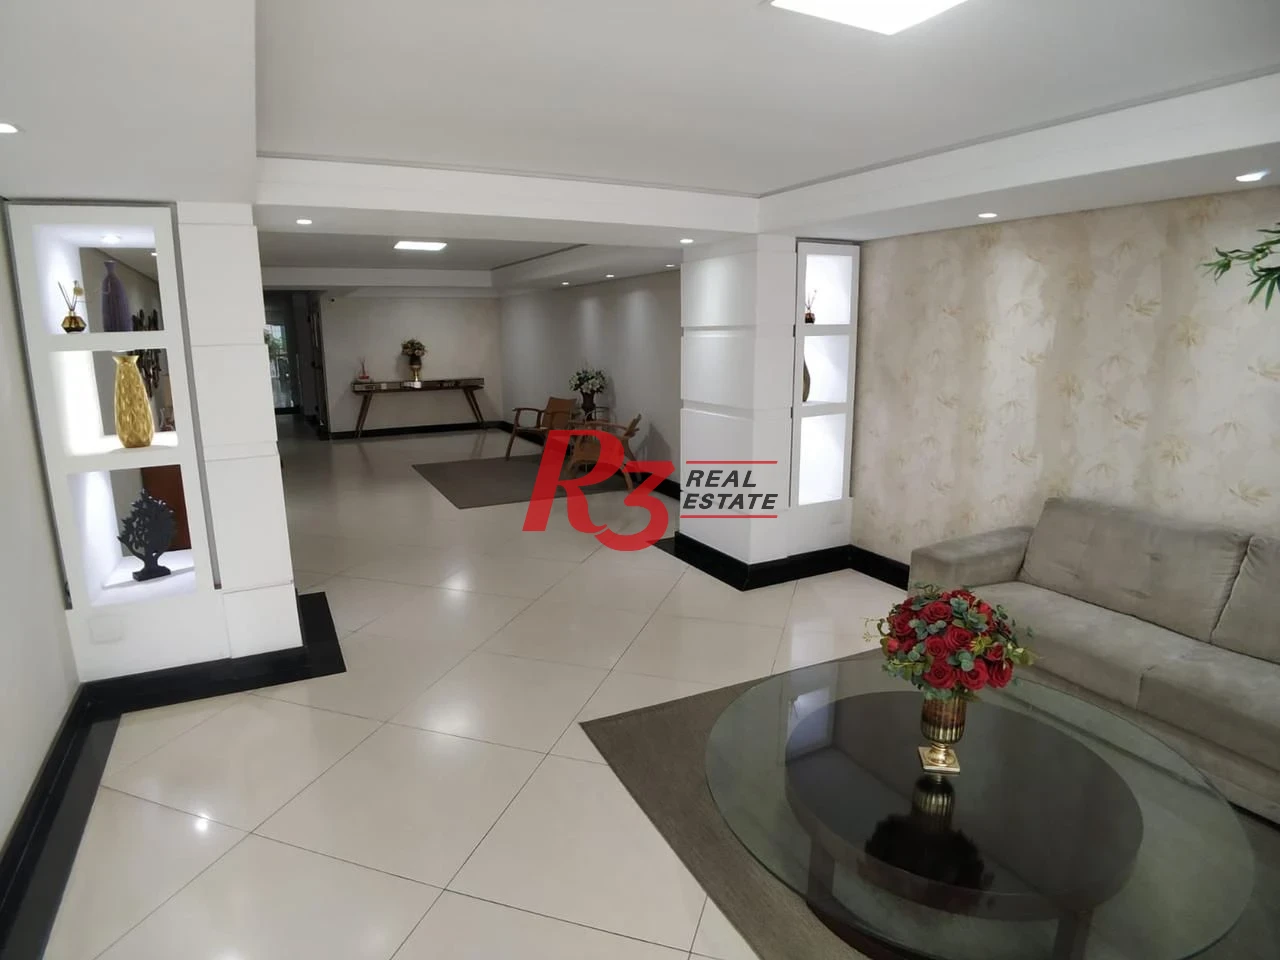 Apartamento com 3 dormitórios à venda, 116 m² por R$ 636.000,00 - Guilhermina - Praia Grande/SP